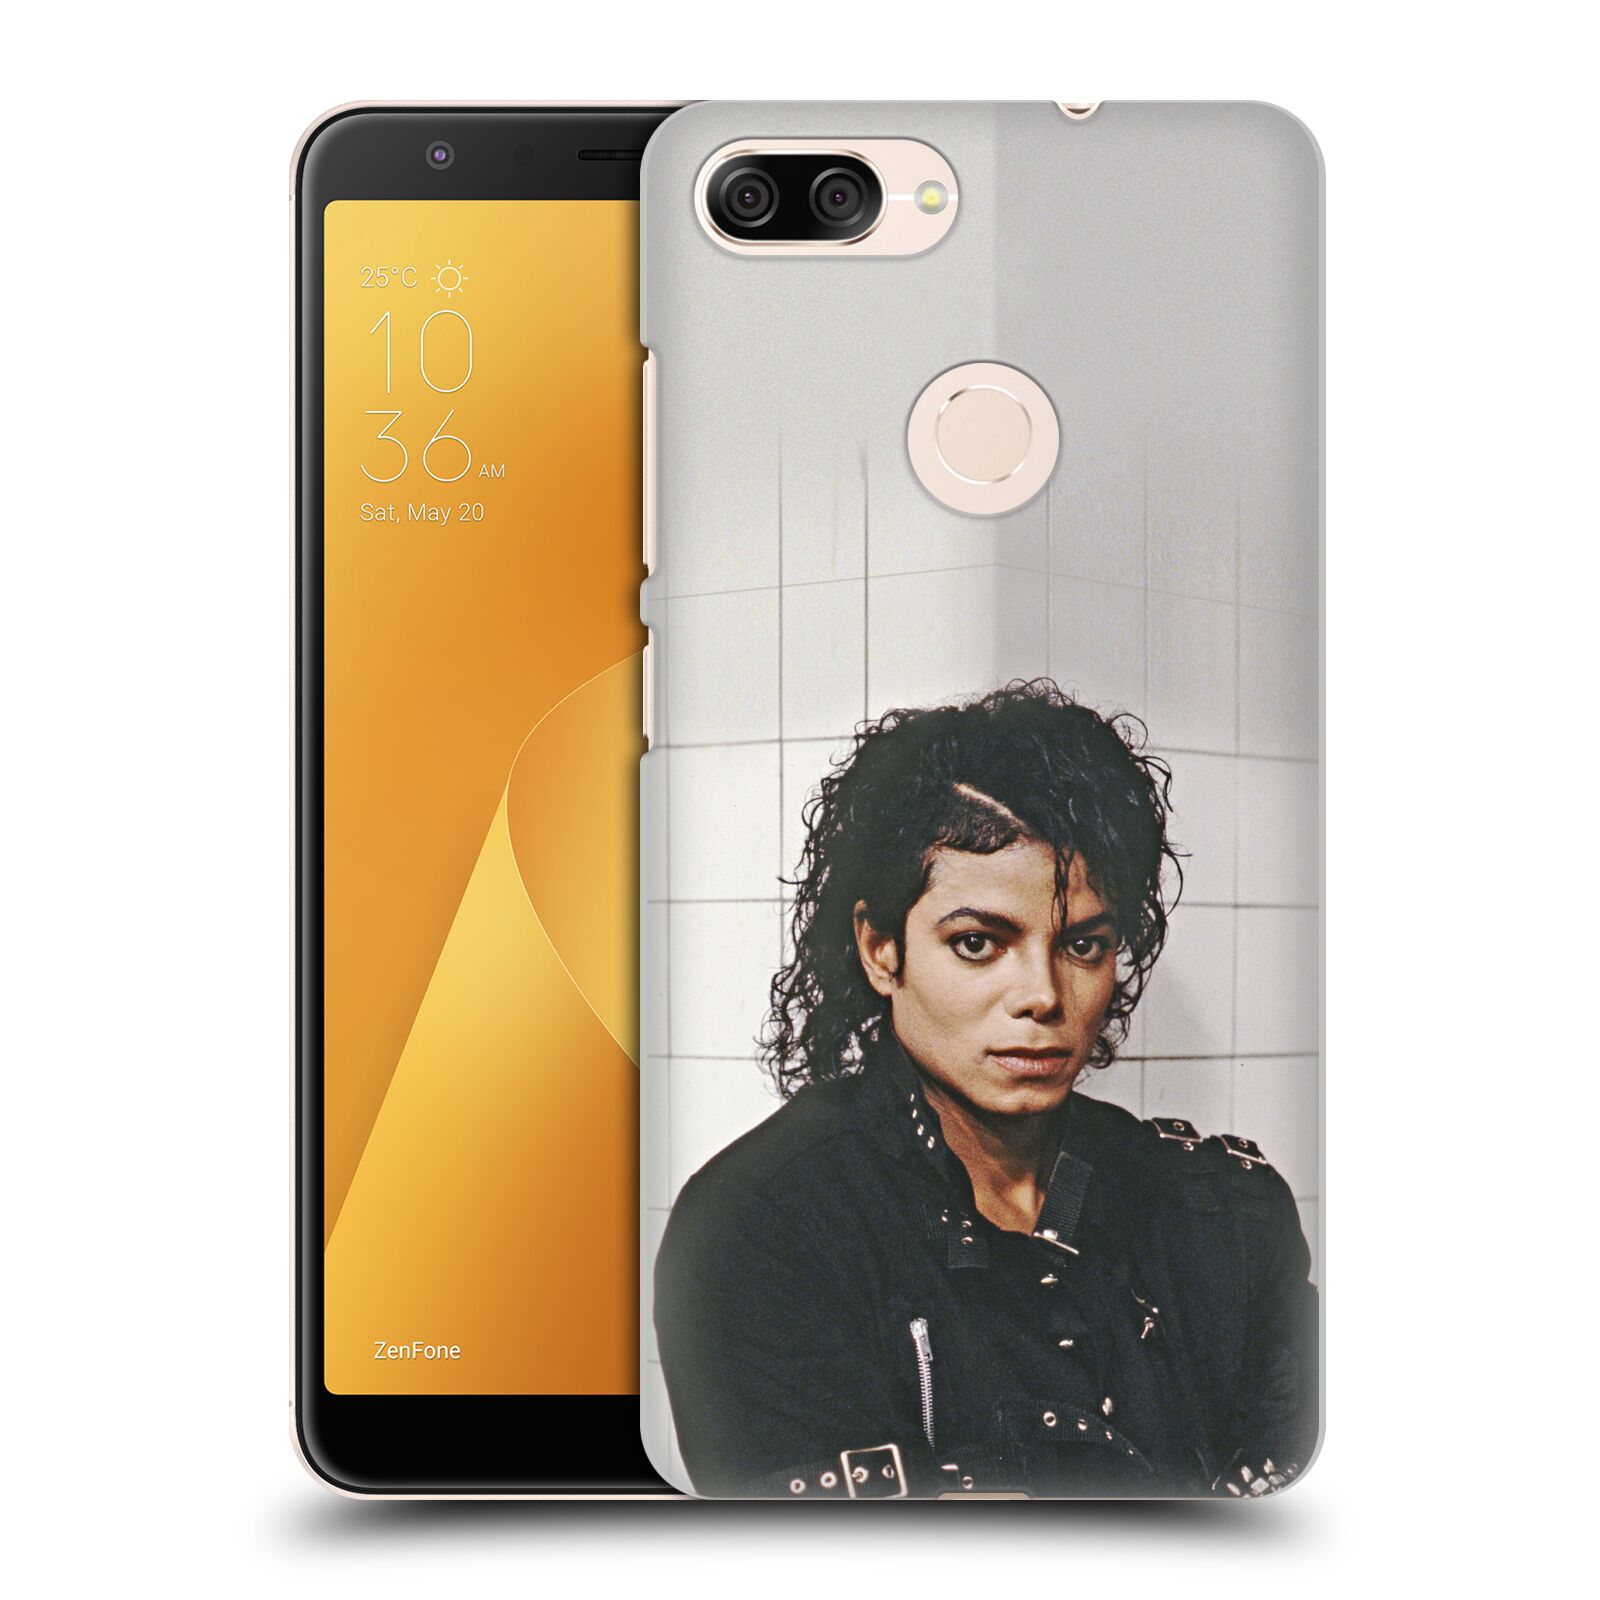 Zadní obal pro mobil Asus Zenfone Max Plus (M1) - HEAD CASE - Zpěvák Michael Jackson - pohled